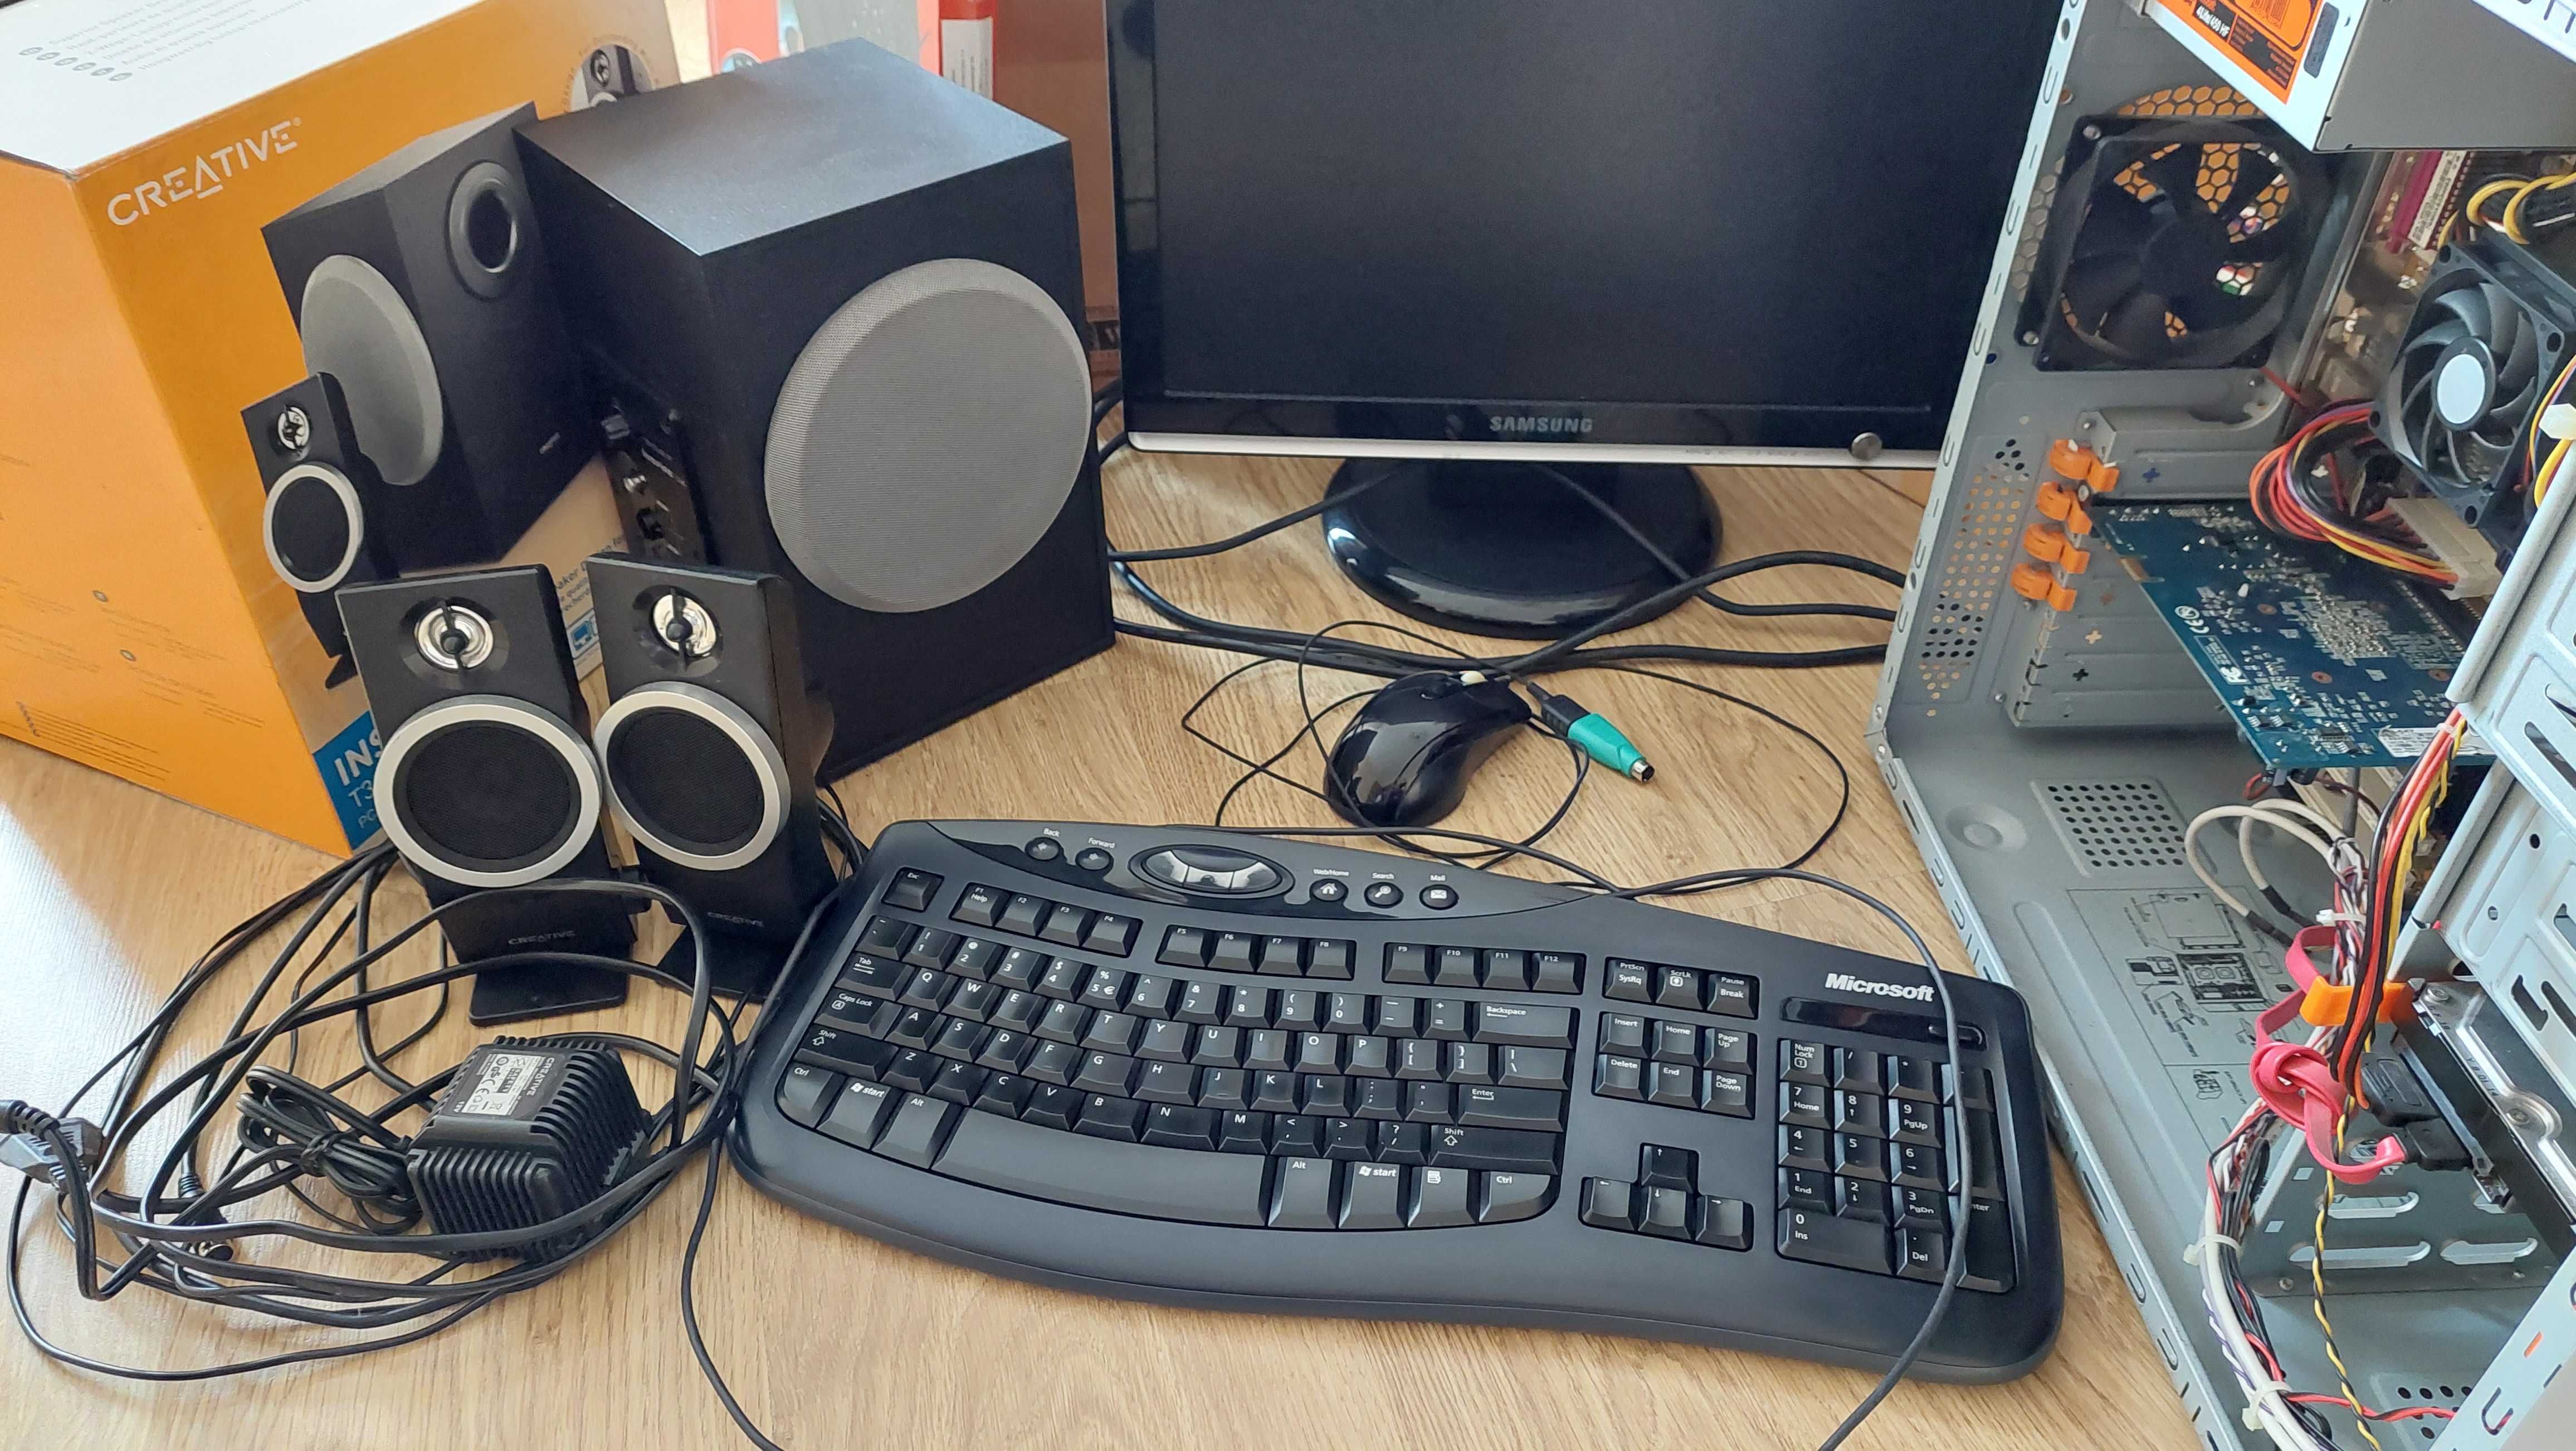 Zestaw komputer monitor Samsung głośniki Creative klawiatura mysz